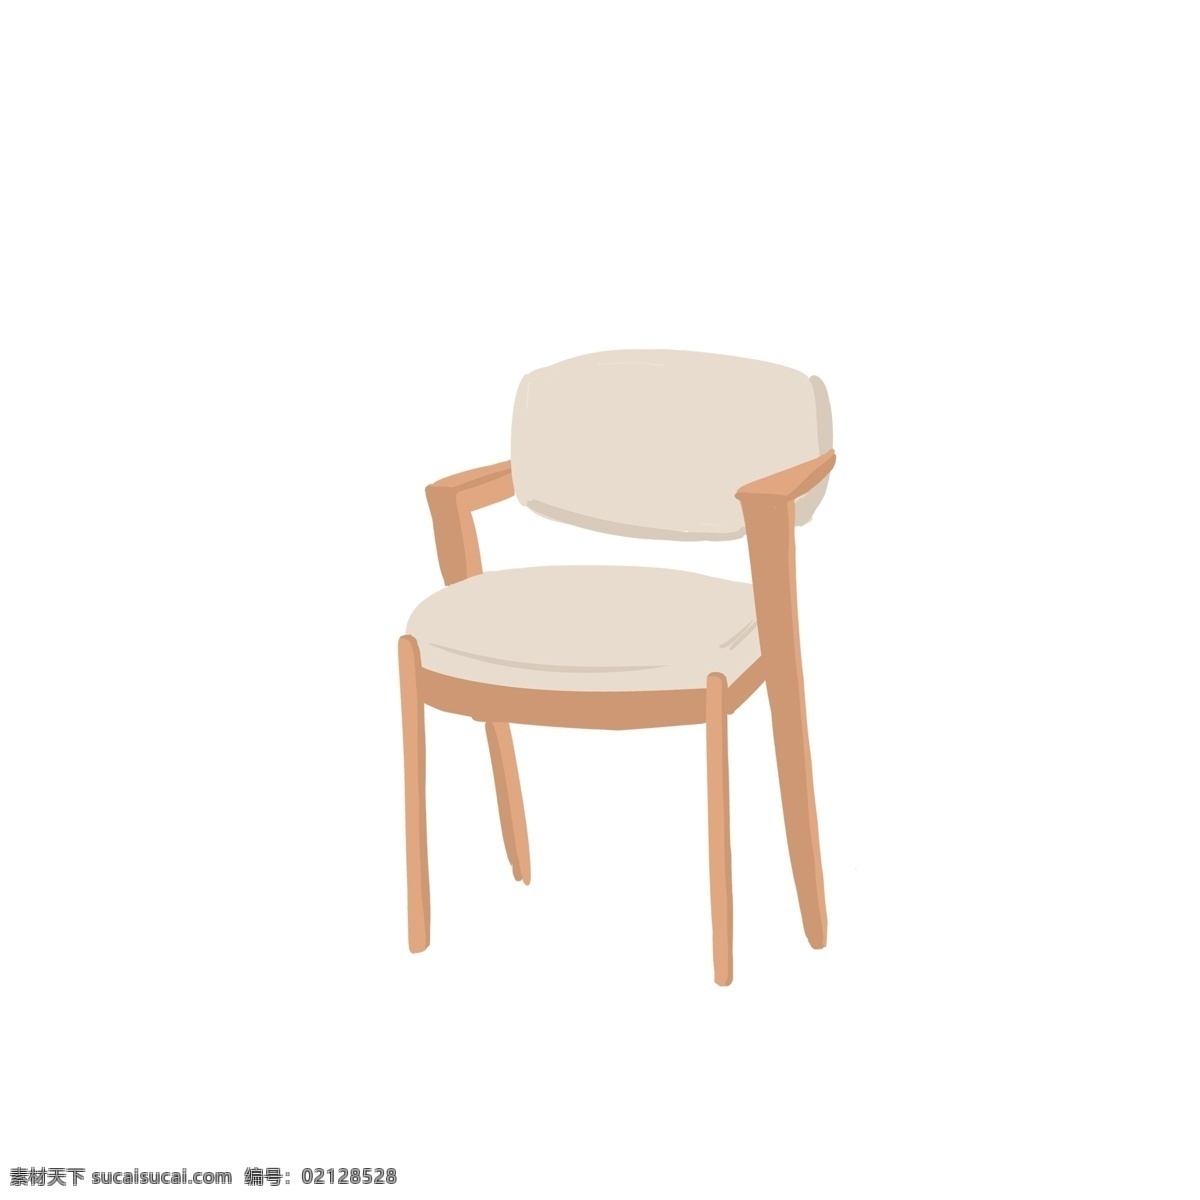 现代 简约 风格 椅子 手绘 插画 实木 北欧 家具 装修 装饰 室内 布置 靠背椅 椅 沙发 垫子 坐 冷淡